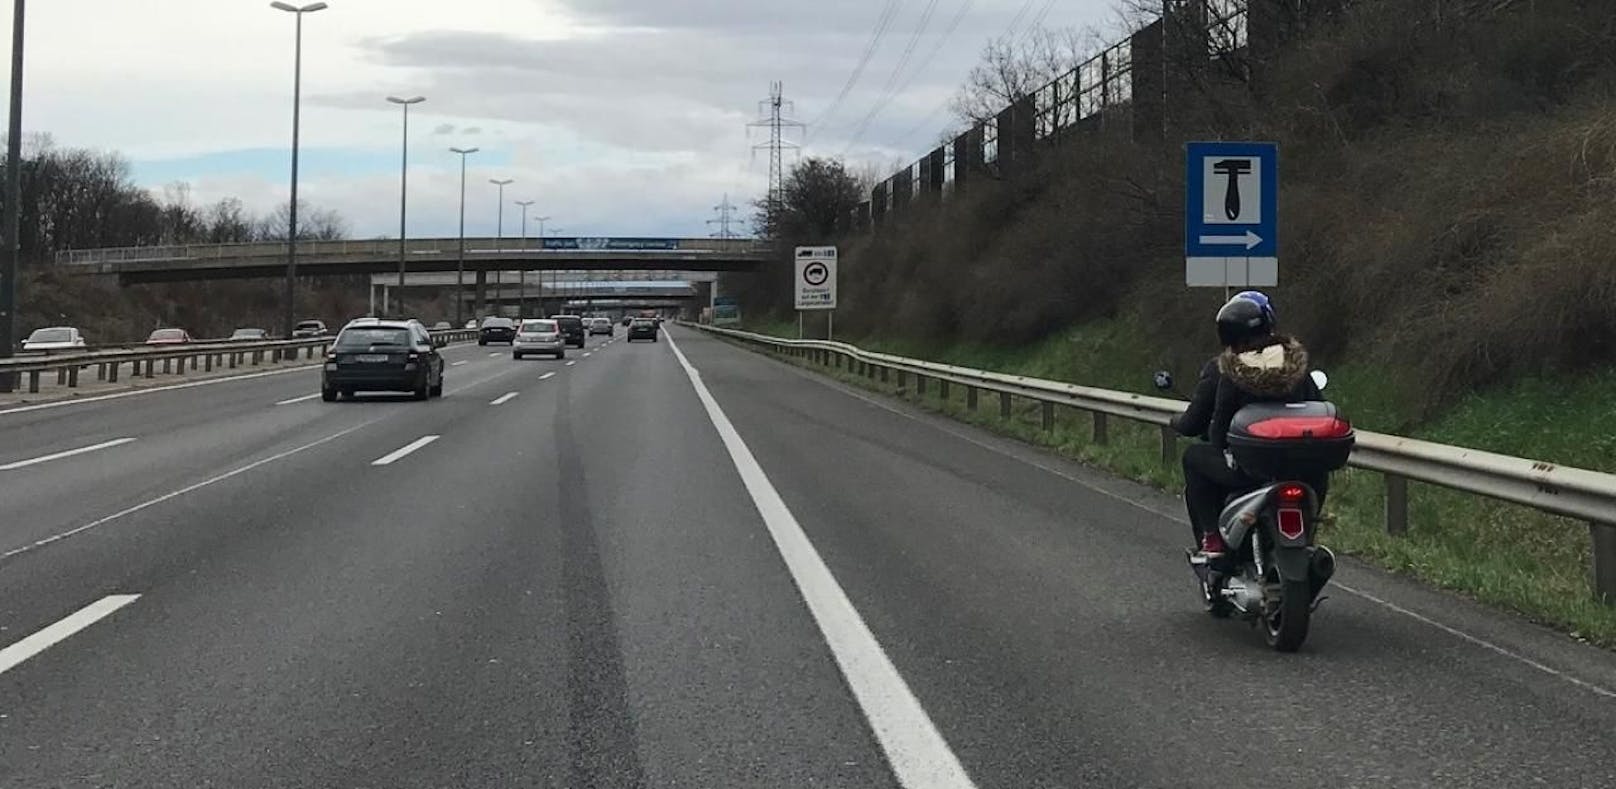 Der 21-jährige Moped-Lenker folgte seinem Navi gleich zweimal auf die Autobahn.